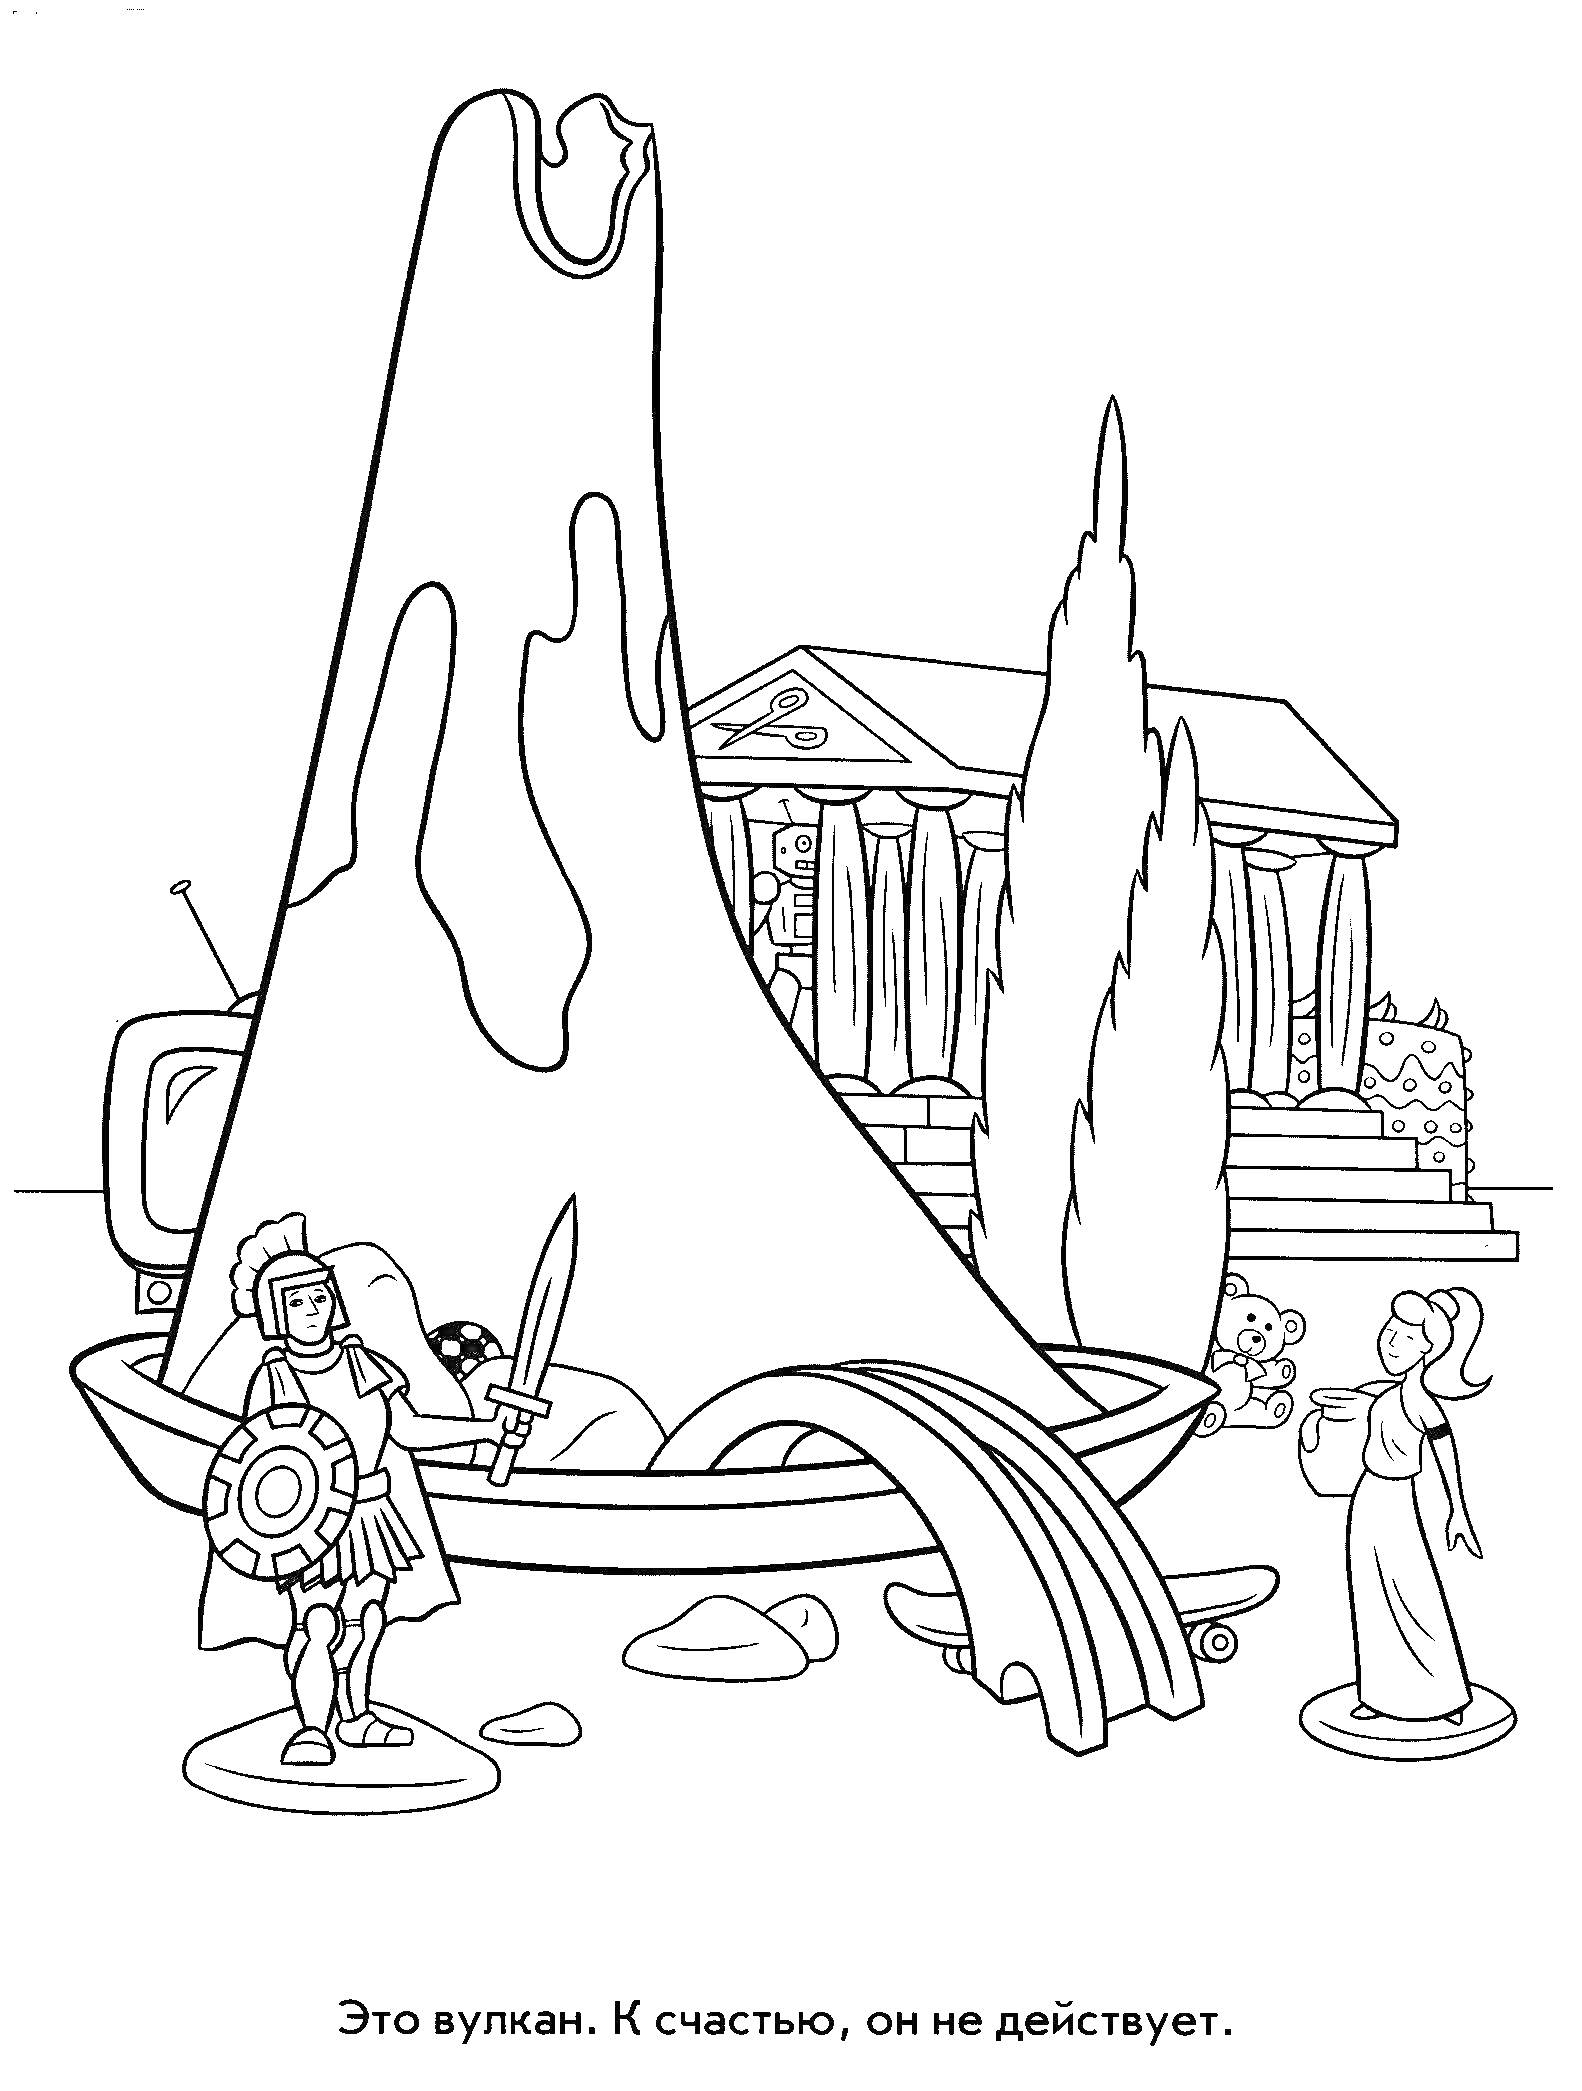 Раскраска Вулкан, Архитектура в стиле древней Греции, Рыцарь с мечом и щитом, Две статуи людей, Автомобиль